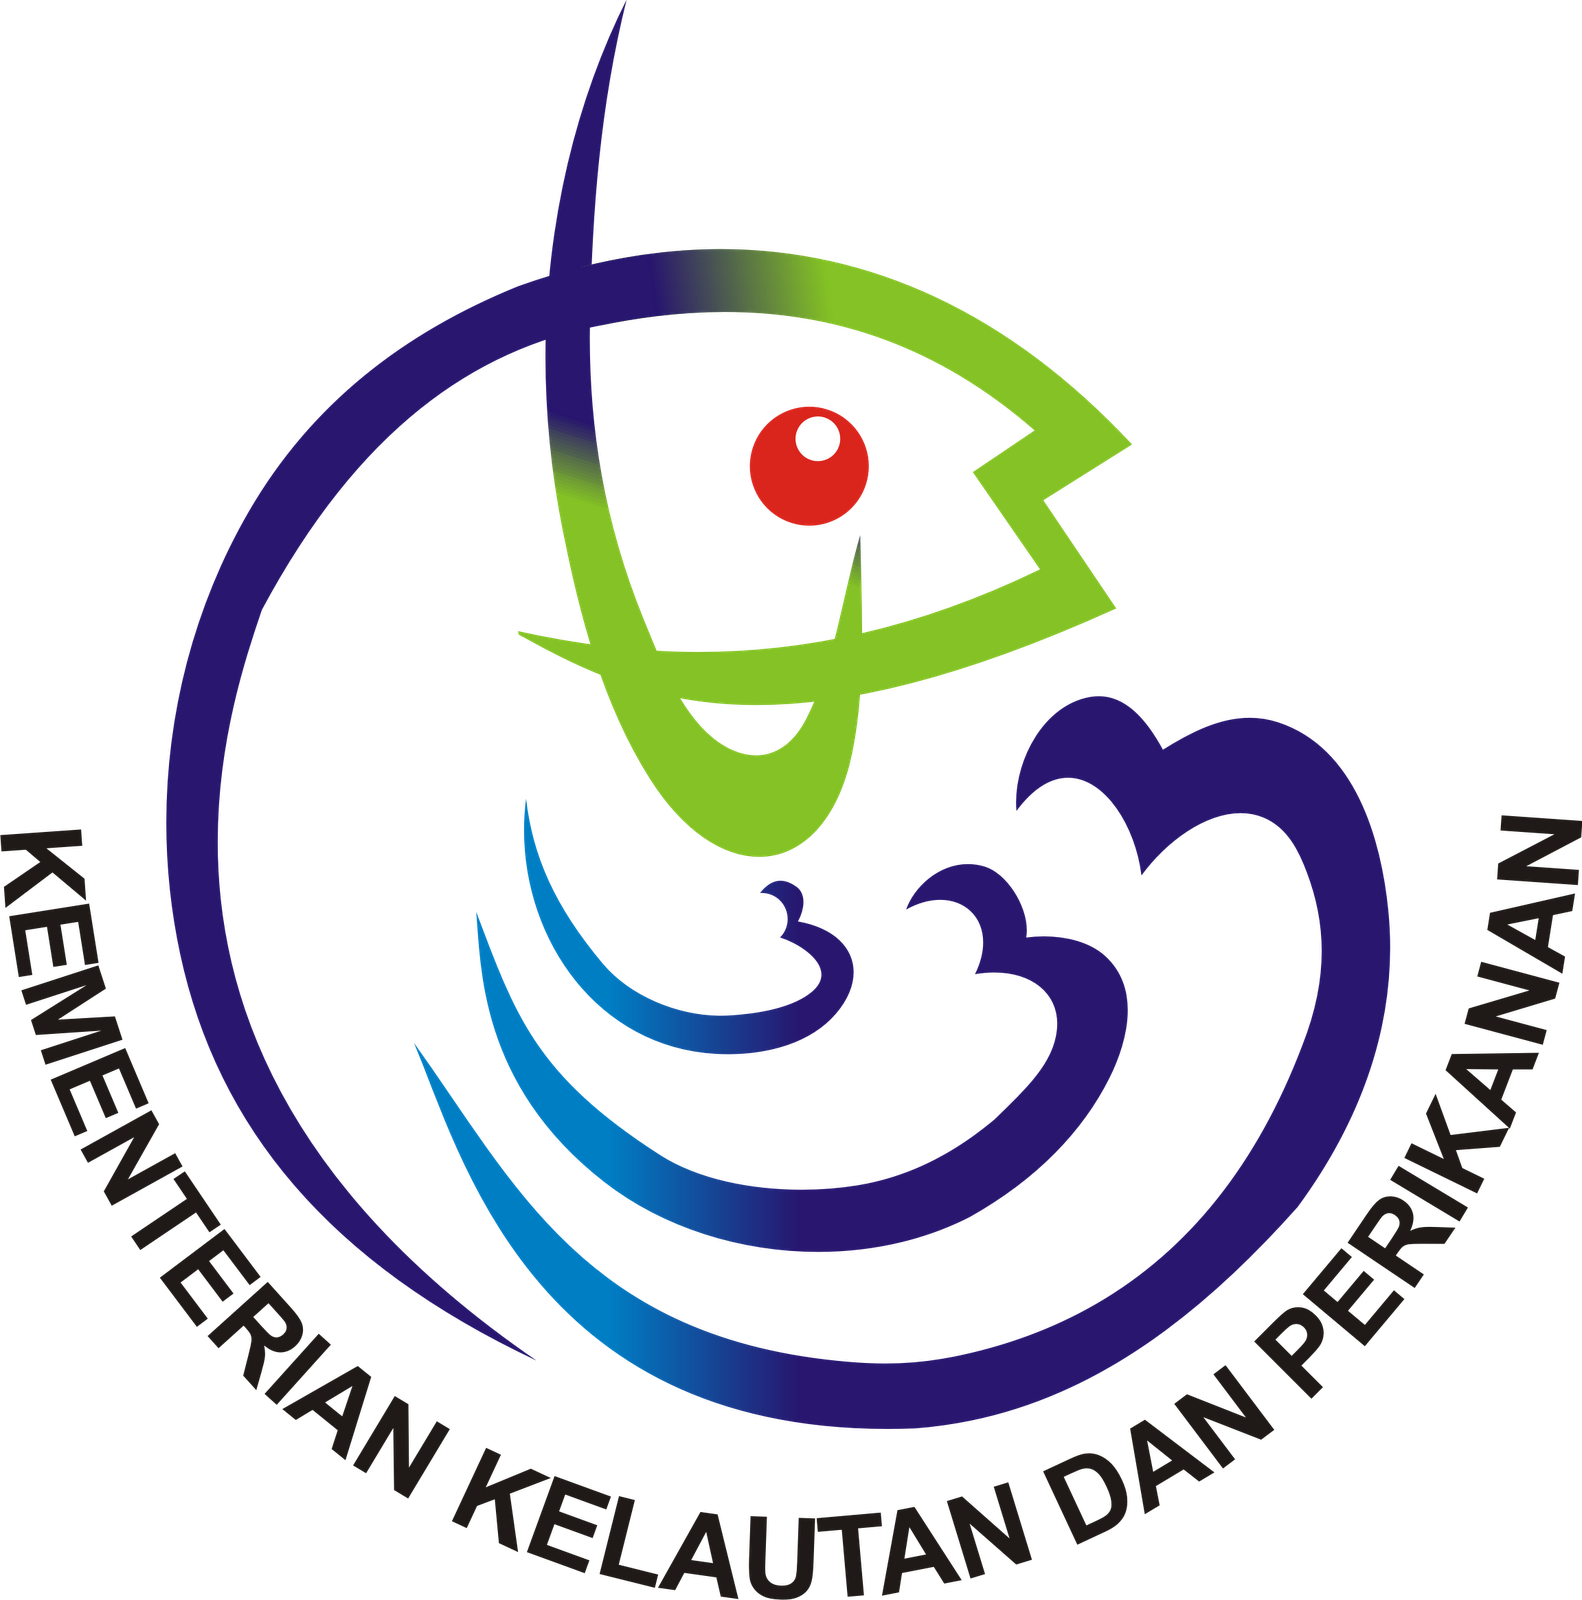 Logo Kementerian di Indonesia - Ardi La Madi's Blog